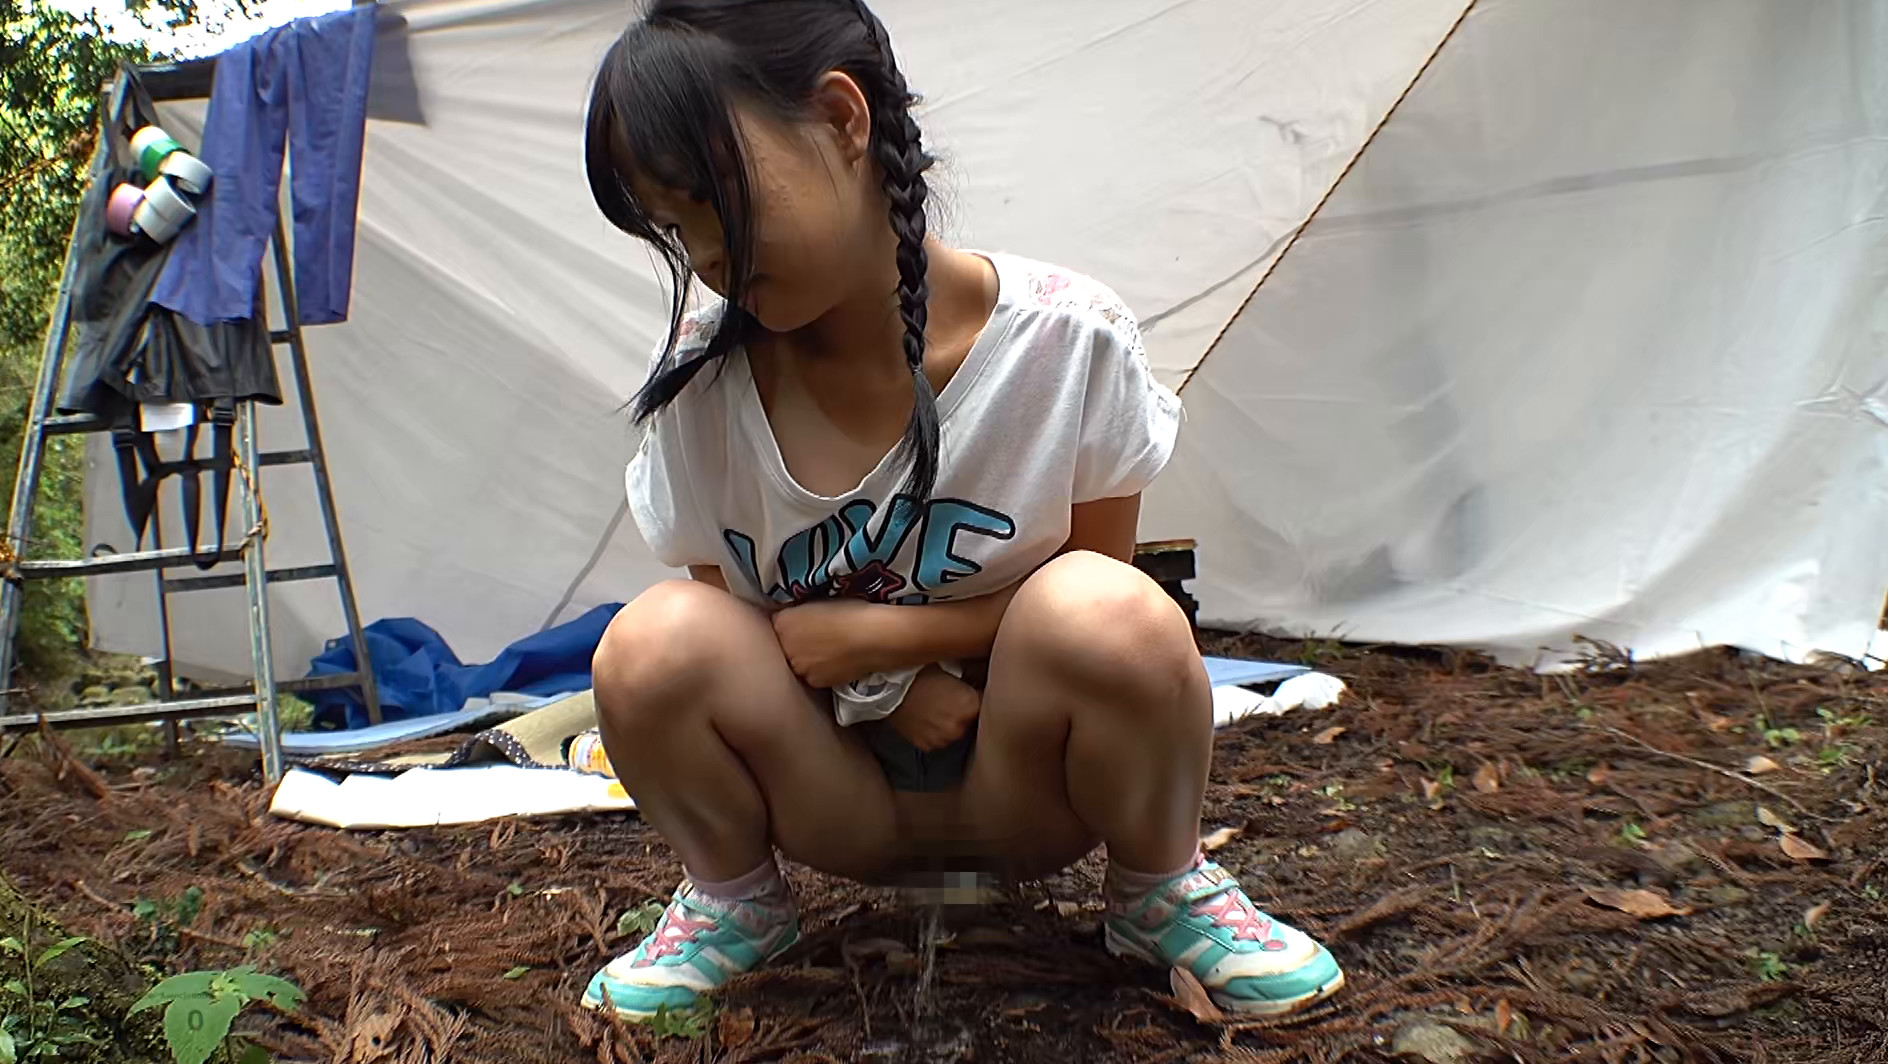 ★【露出】夏休みキャンプ場管理人による日焼け美少女野外わいせつ映像